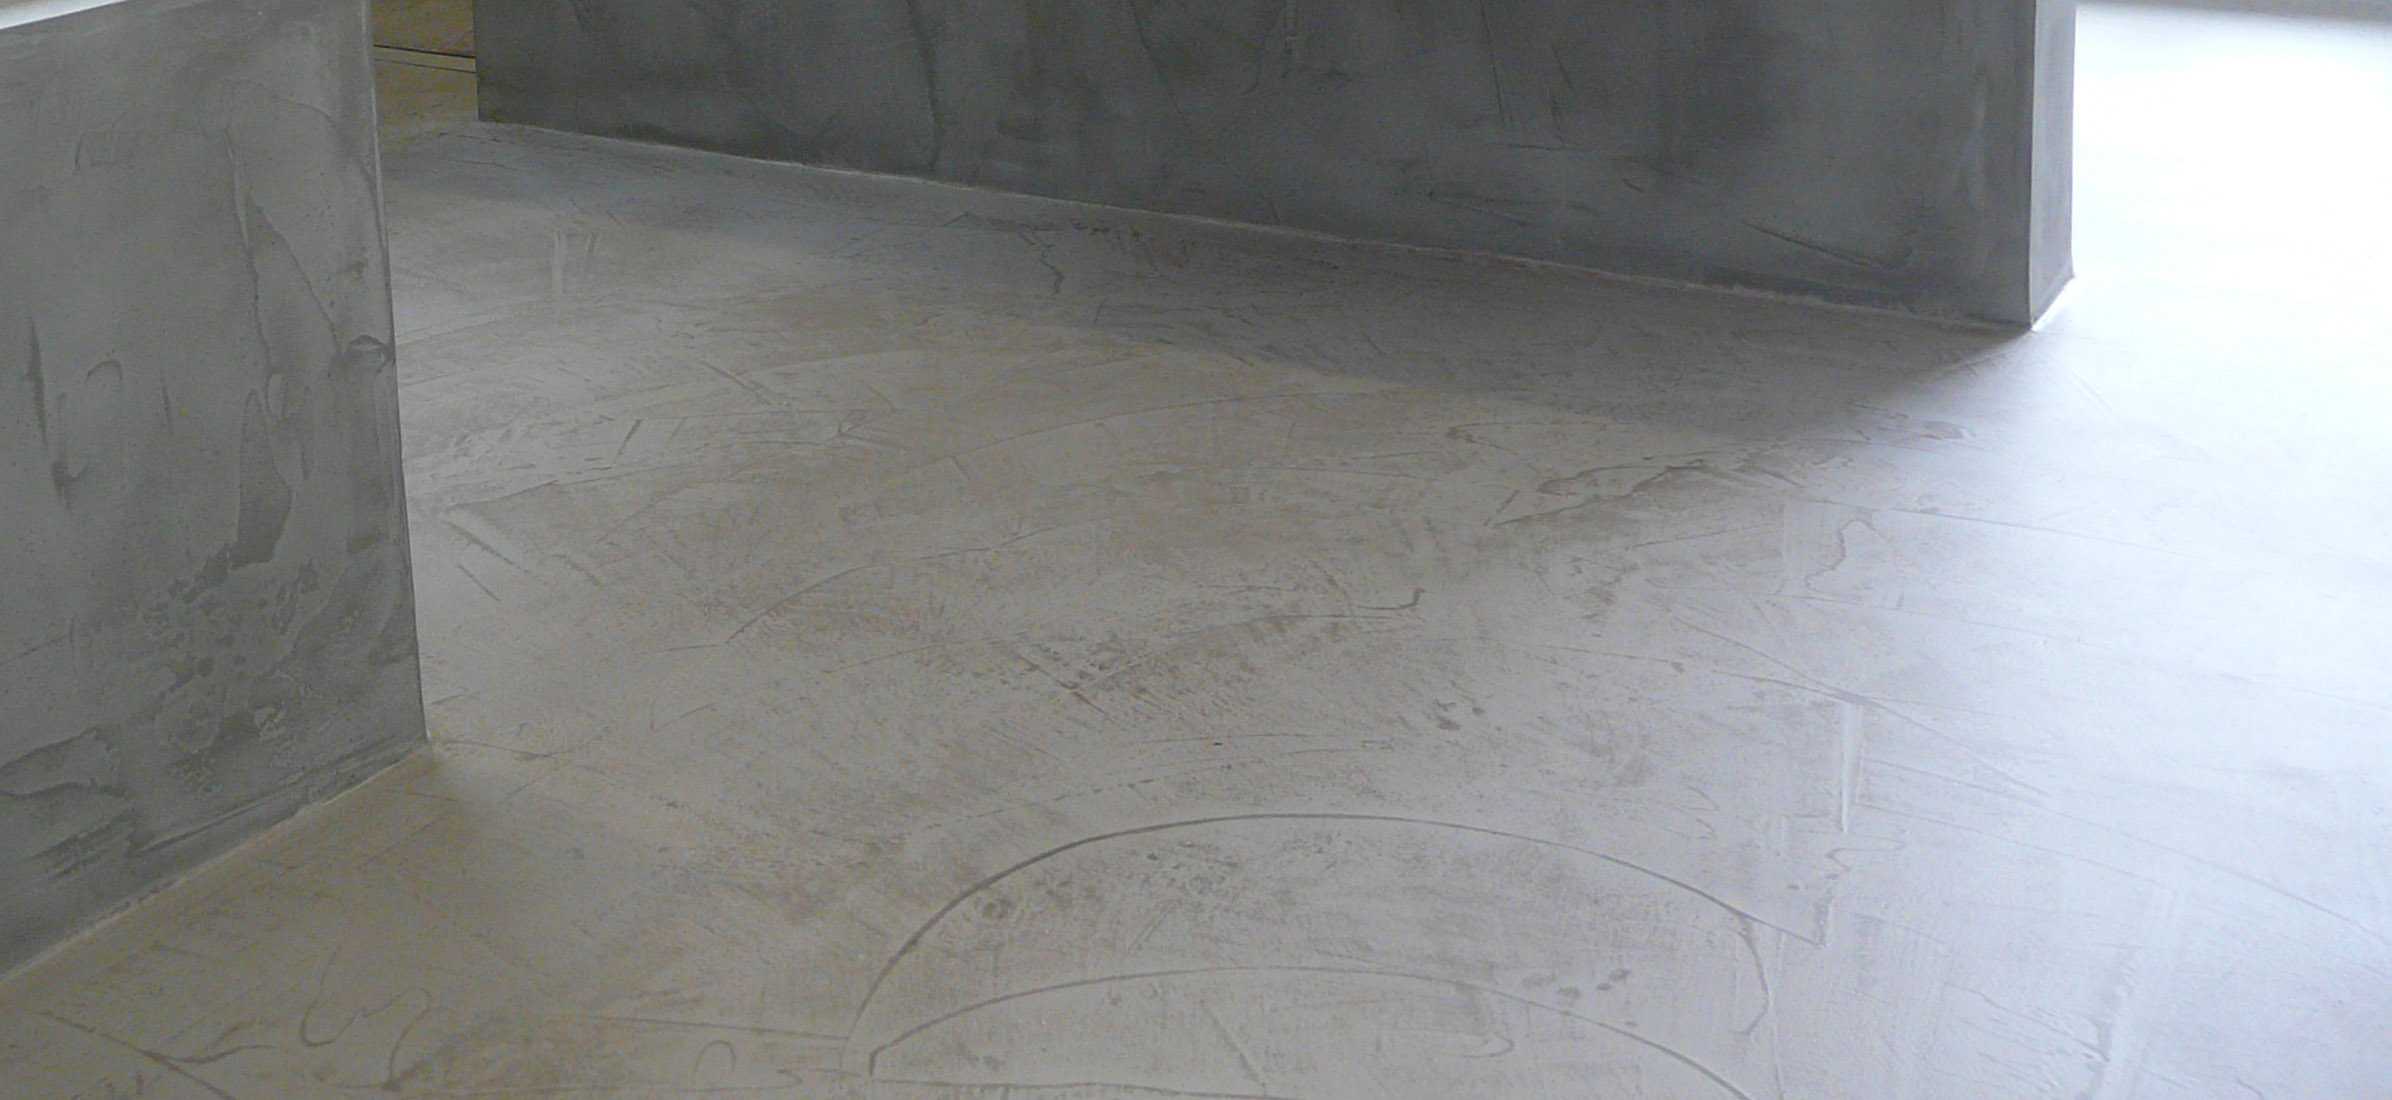 Betonboden gespachtelt fugenlos Wand grau Küche Bad Badezimmer Außenküche Grill Tisch Möbel mainTisch mainBeton mainGrill 13